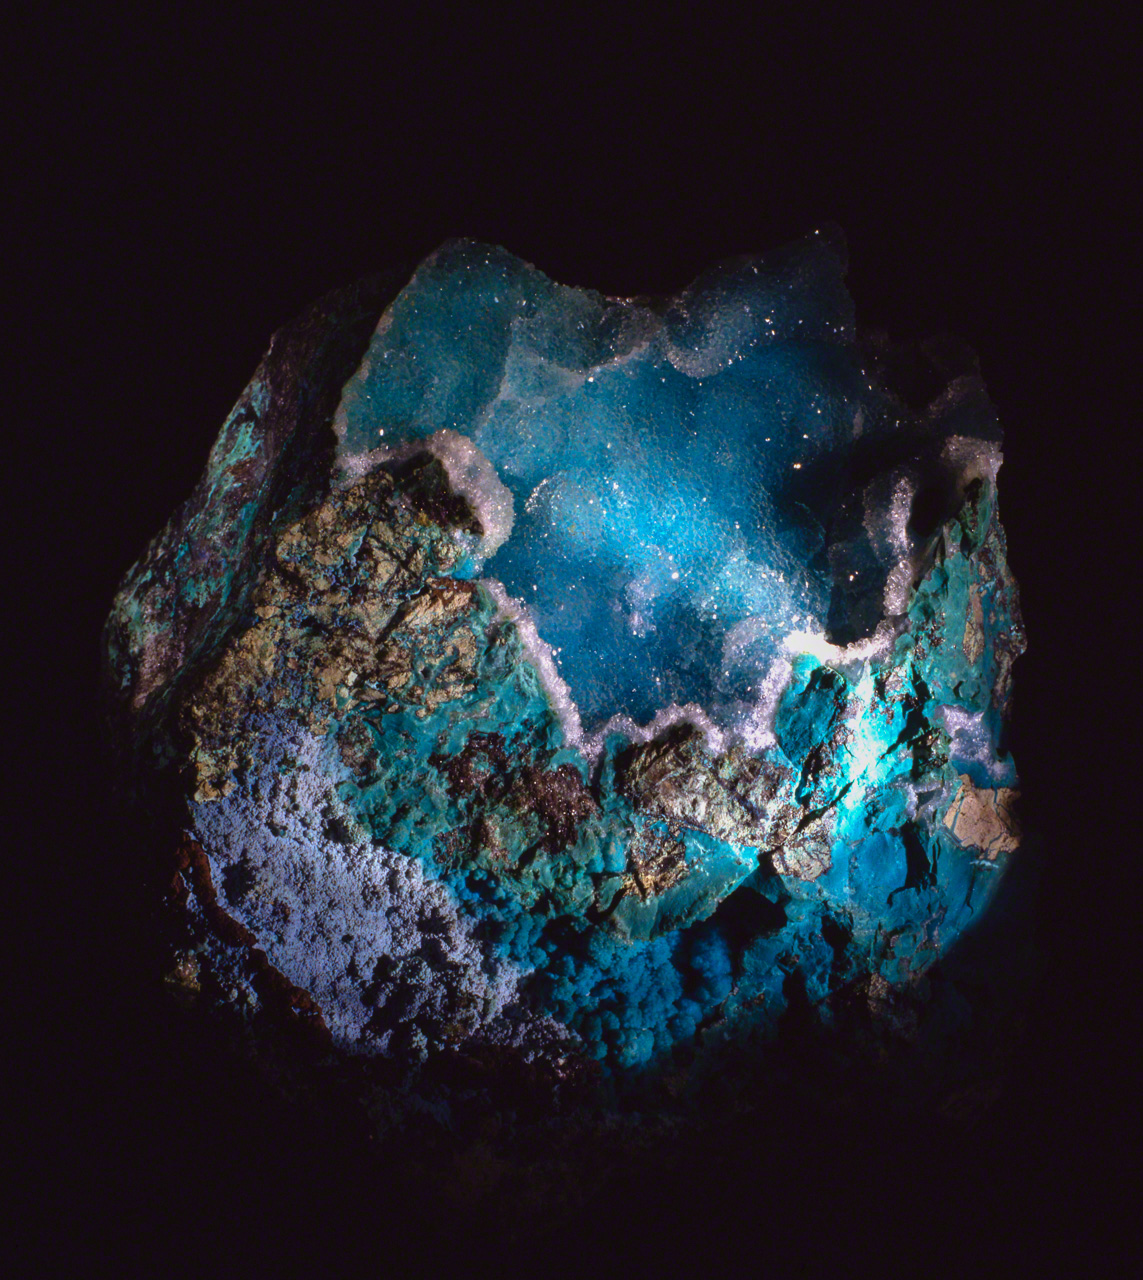 La chrysocolle est un mystérieux minéral qui présente parfois d’étranges ressemblances avec les images de notre planète terre bleue et aqueuse vue de l’espace.